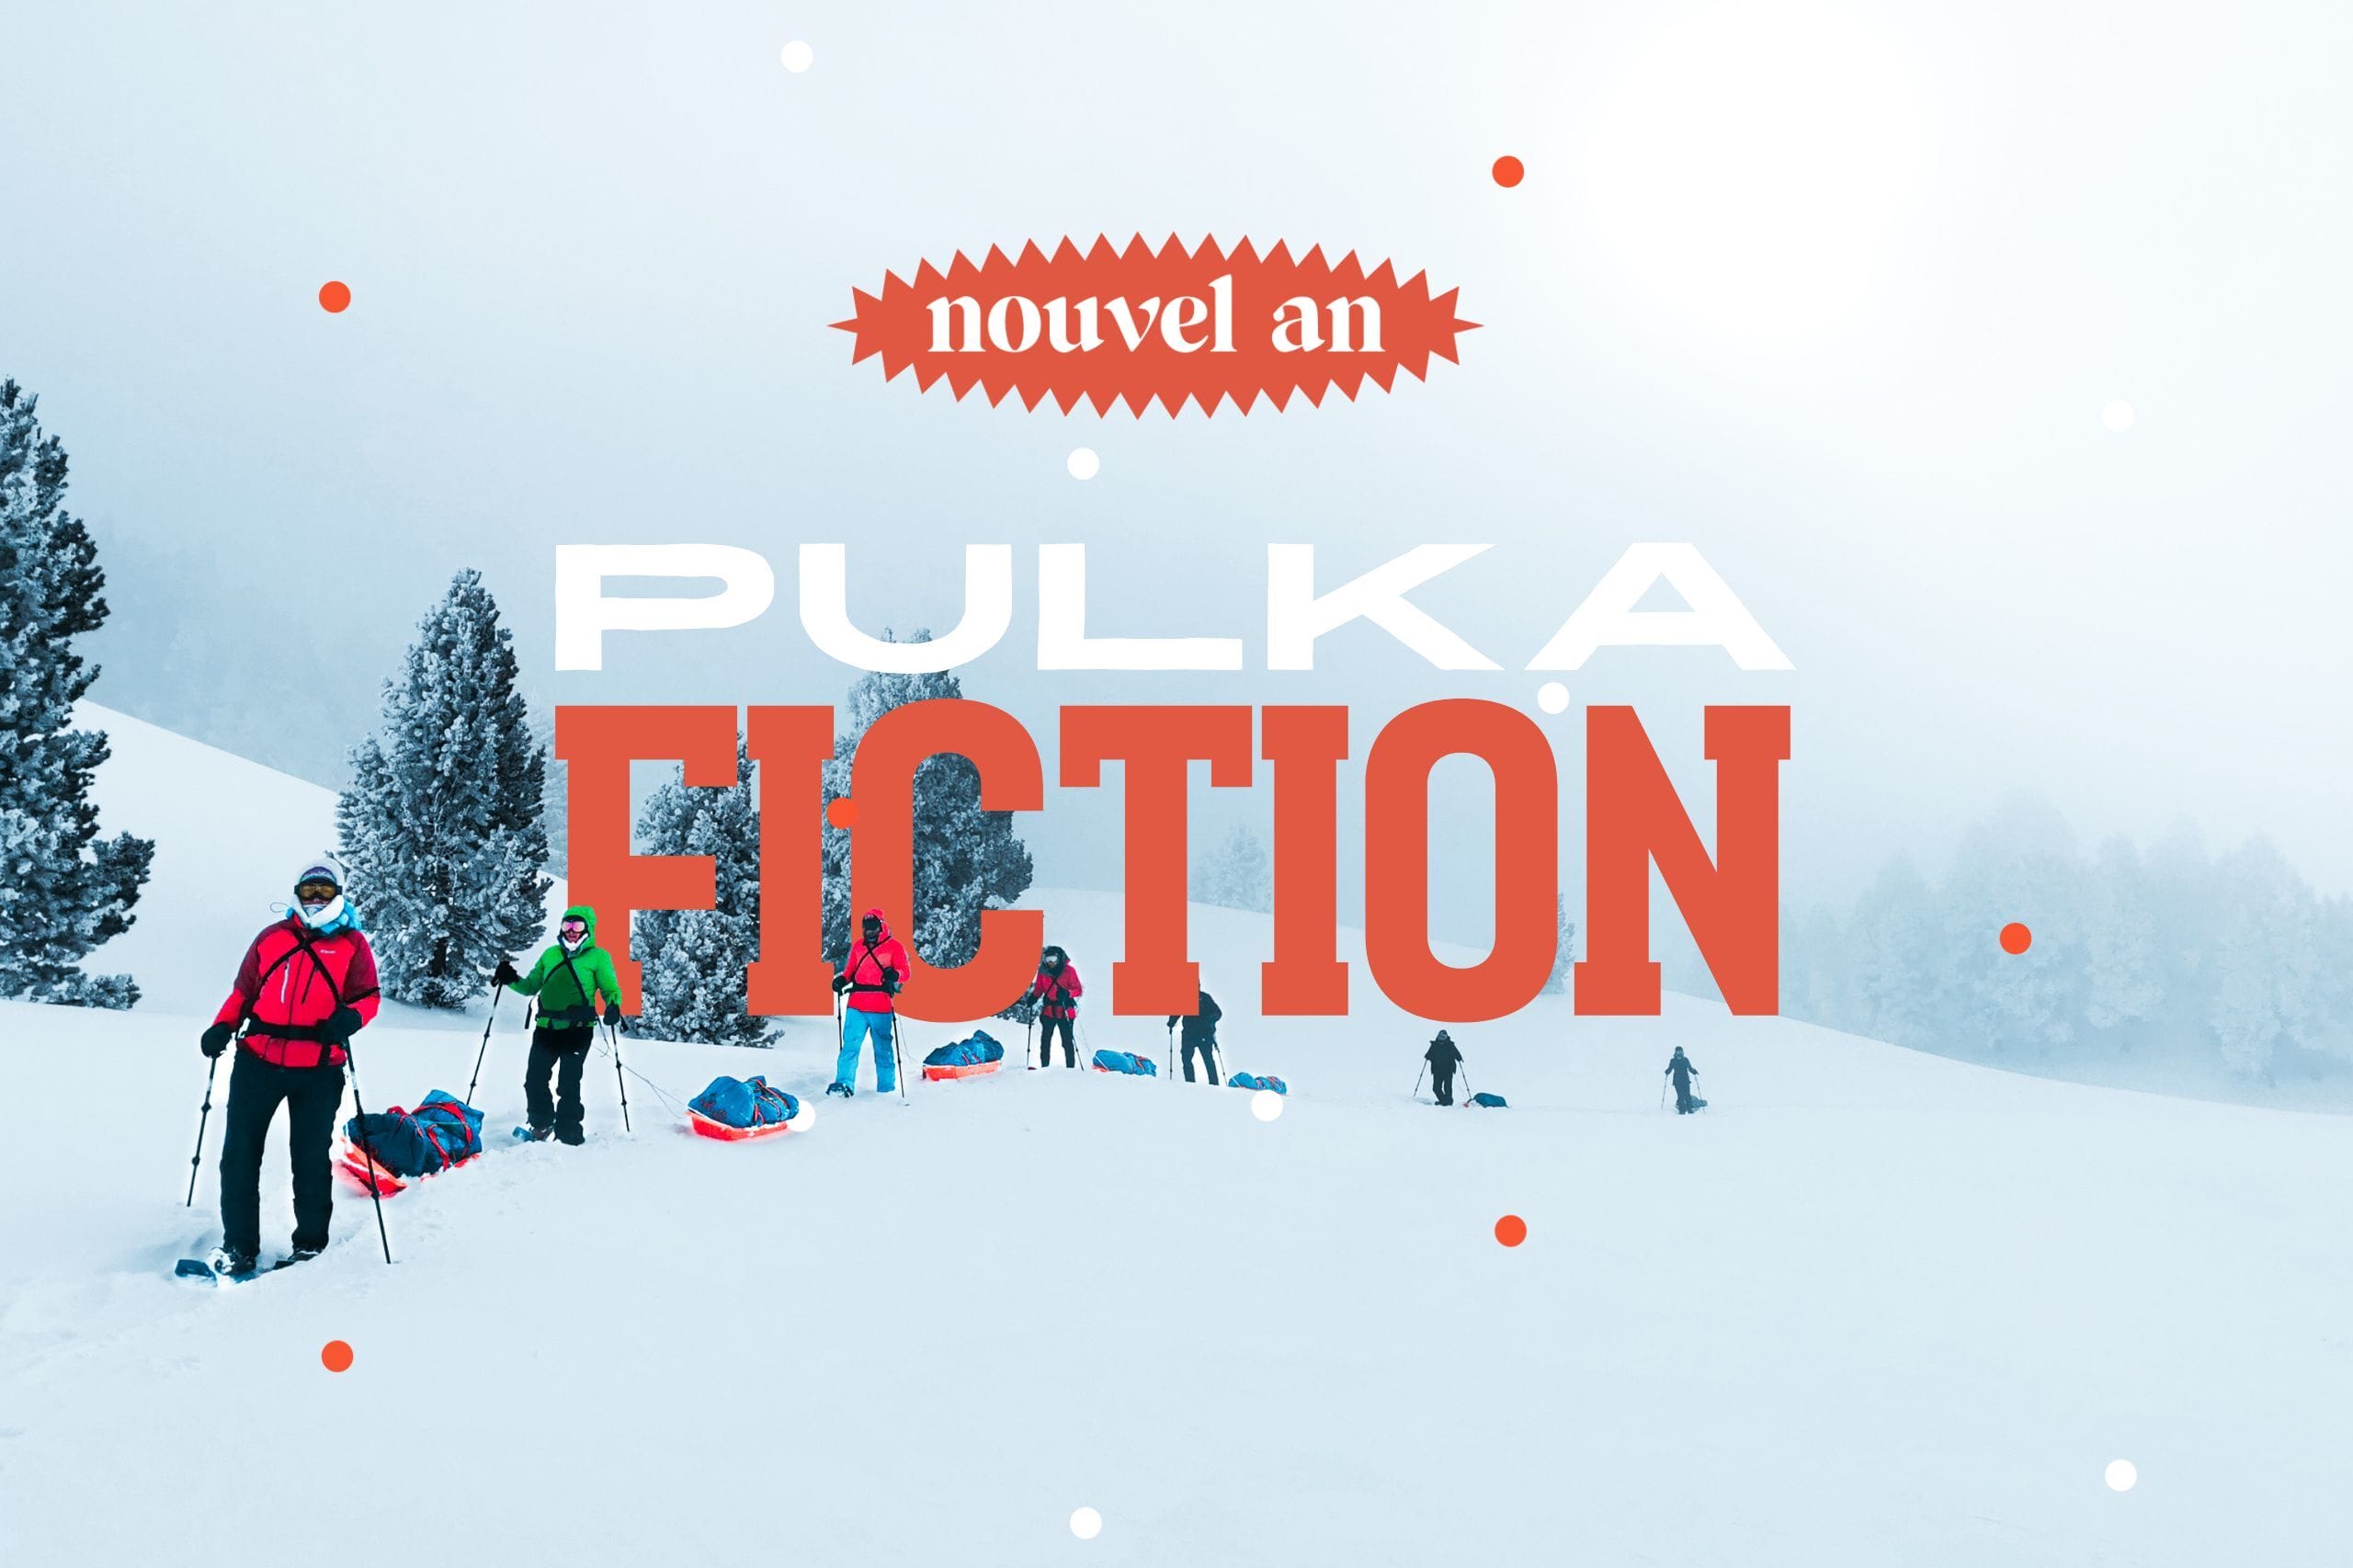 Pulka Fiction  : Nouvel An rando raquettes, pulka et bivouac hivernal dans le Vercors